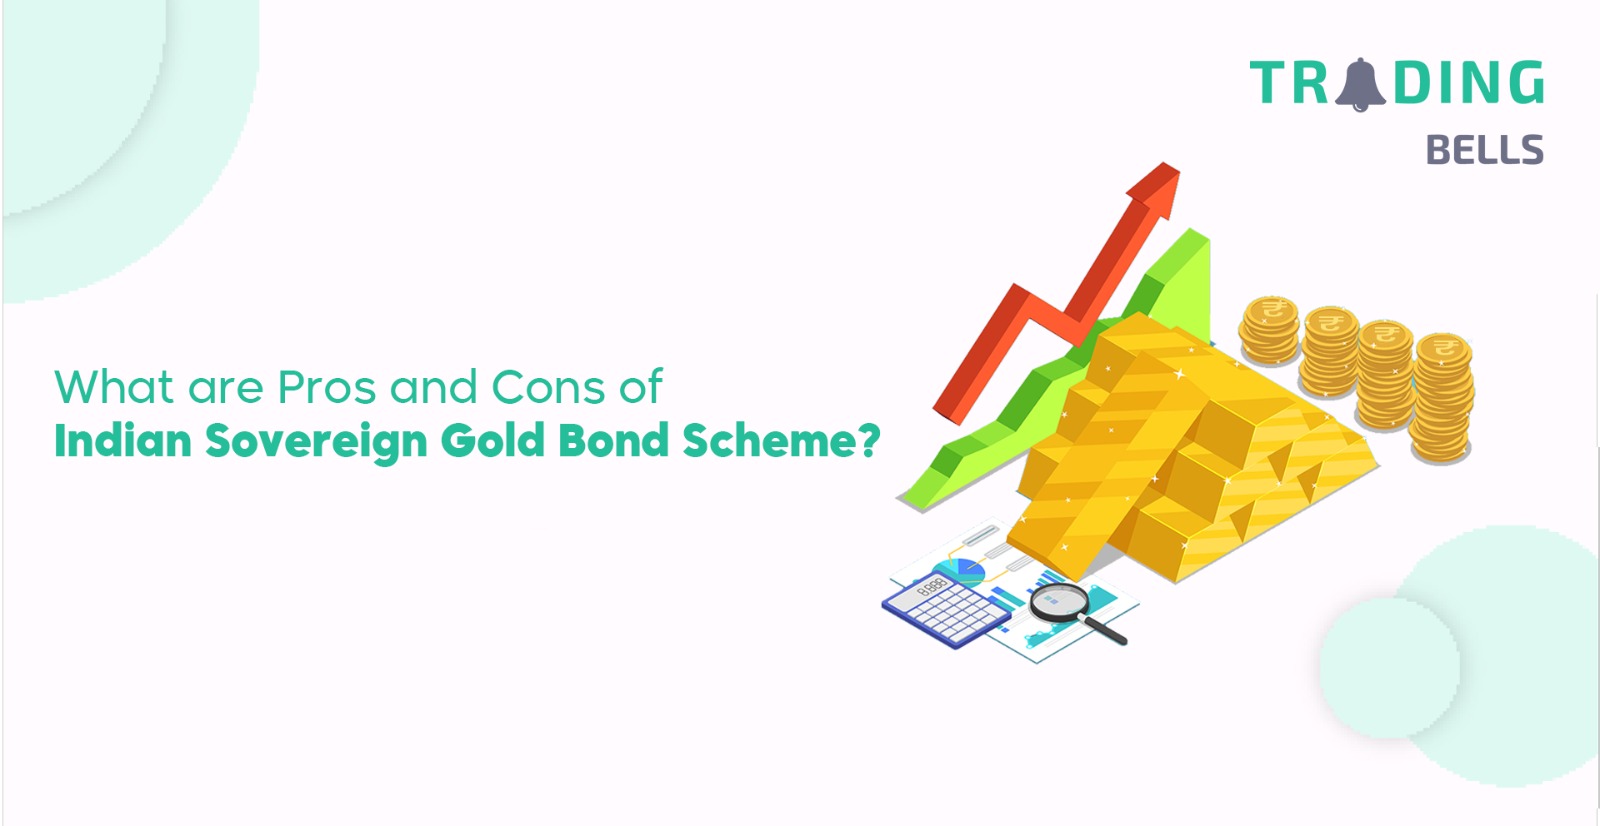 Indian Sovereign Gold Bond Scheme